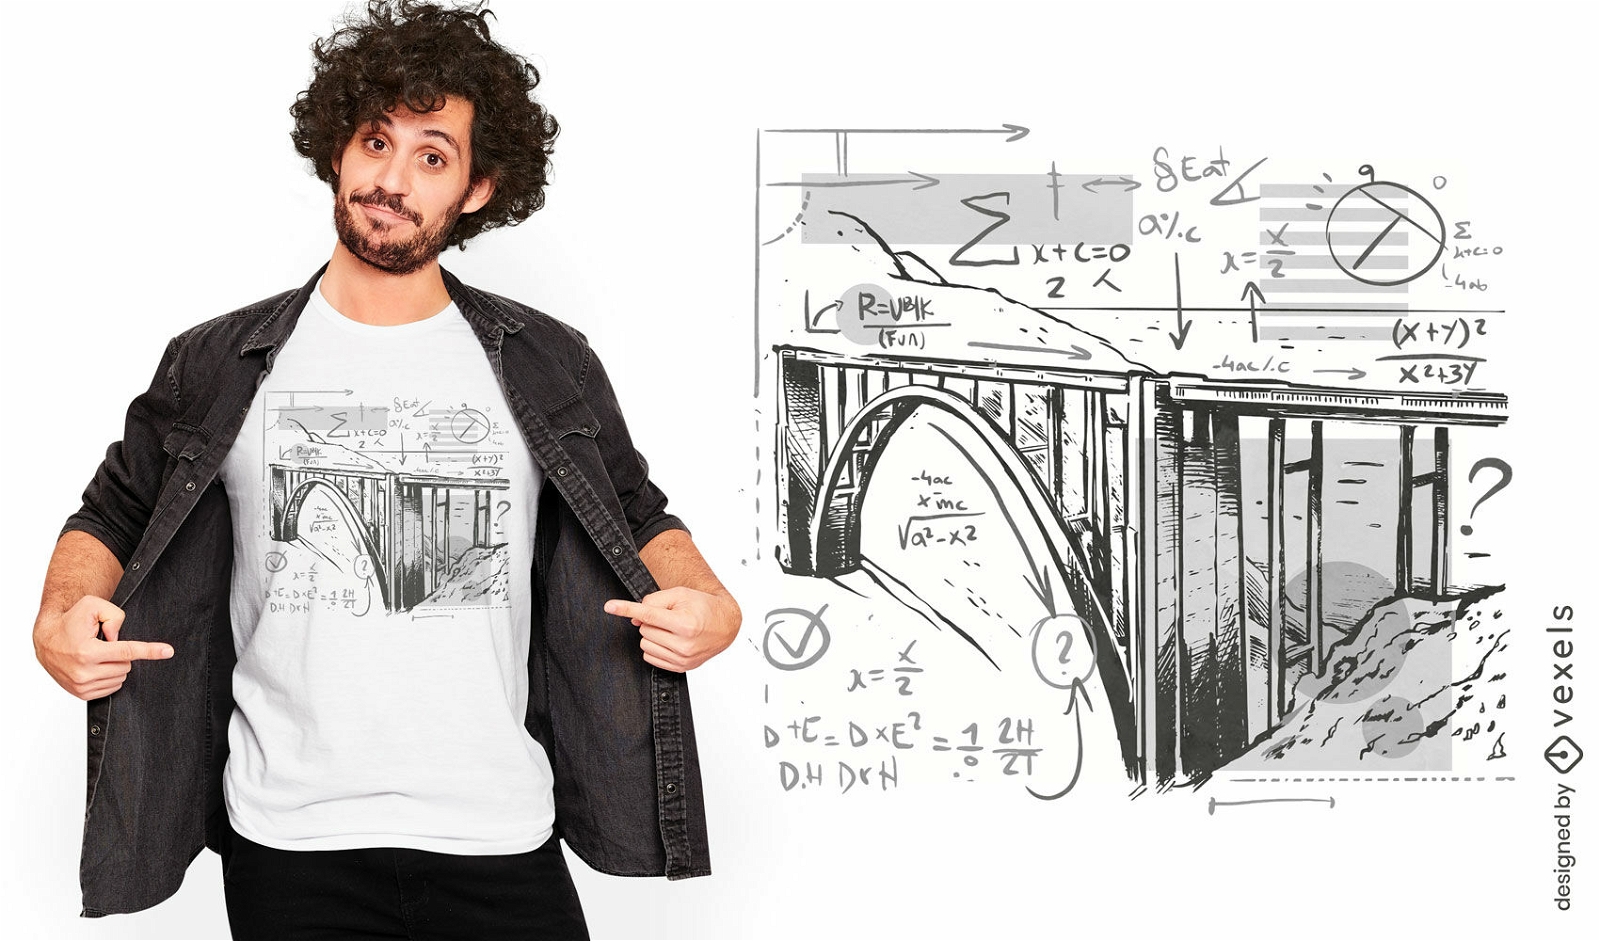 Diseño de camiseta de puente y ecuaciones matemáticas.